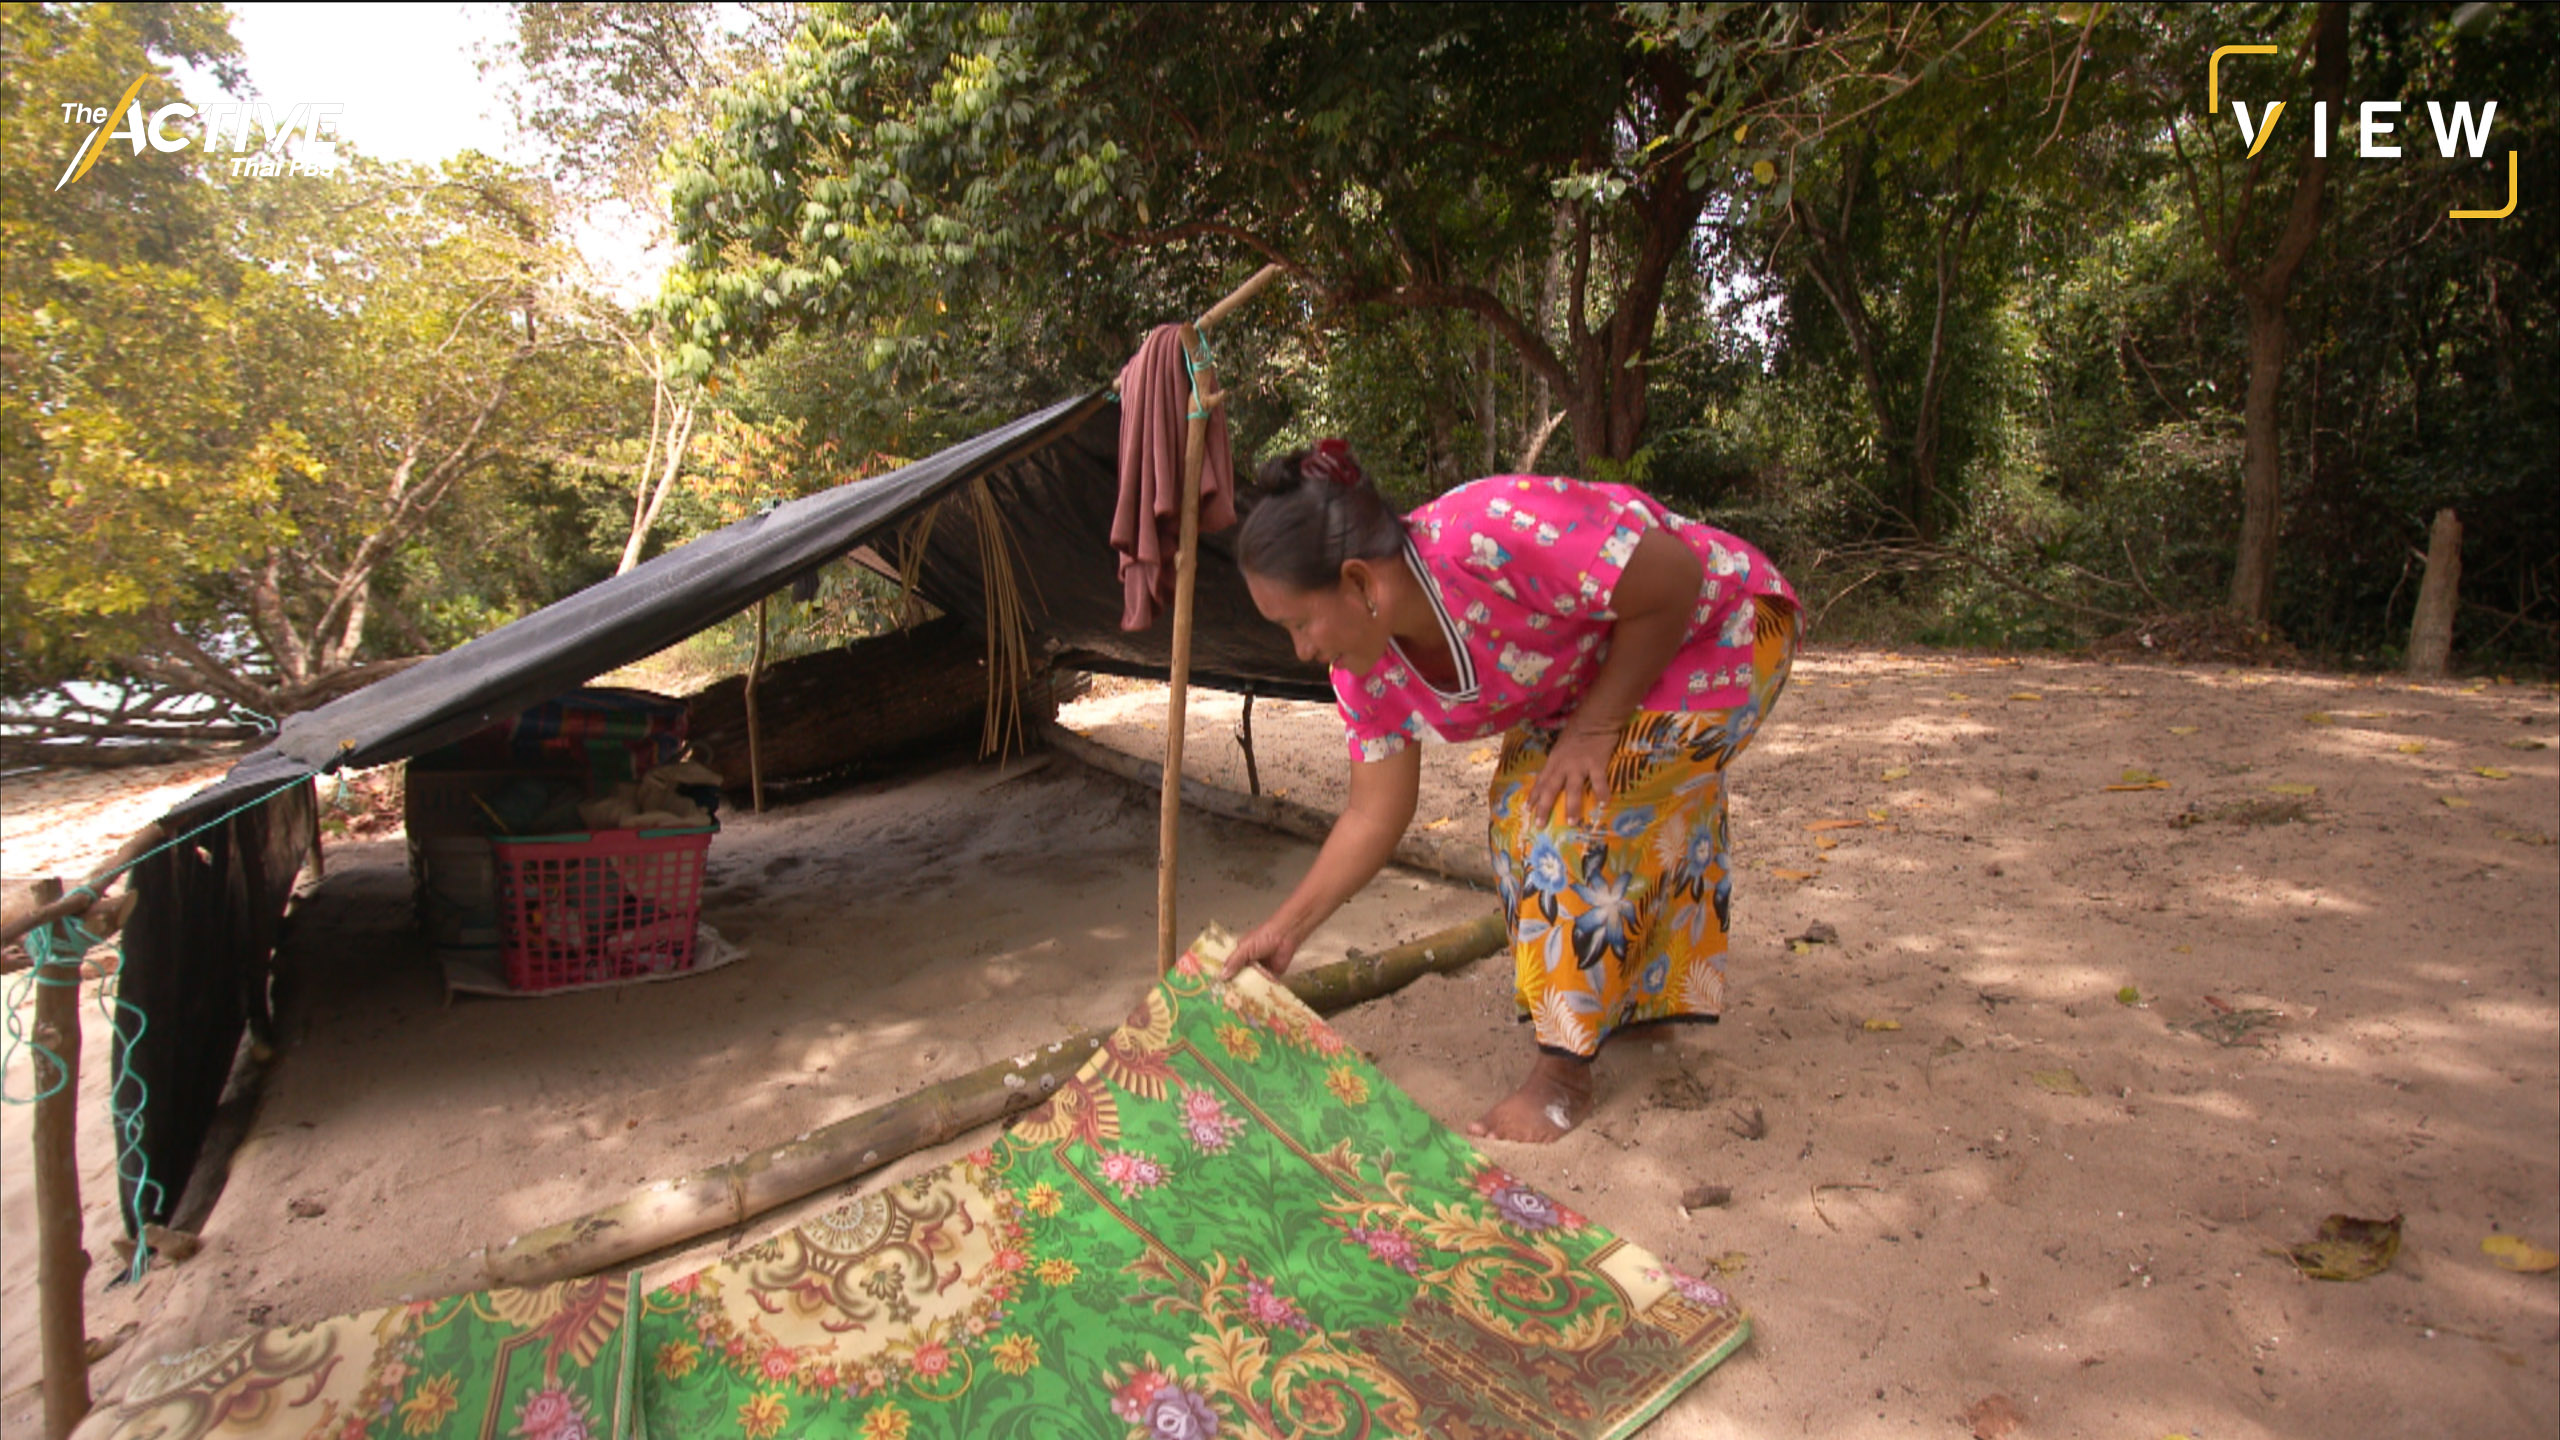 บาฆัด เป็นเพิงพักชั่วคราว สร้างขึ้นง่าย ๆ เมื่อก่อนมุงหลังคาด้วยใบมะพร้าว  ปัจจุบันใช้ผ้าใบกางเป็นเต็นท์ชั่วคราว  ภายในมีแค่ของใช้จำเป็น เช่น เสื่อ หมอน ผ้าห่ม